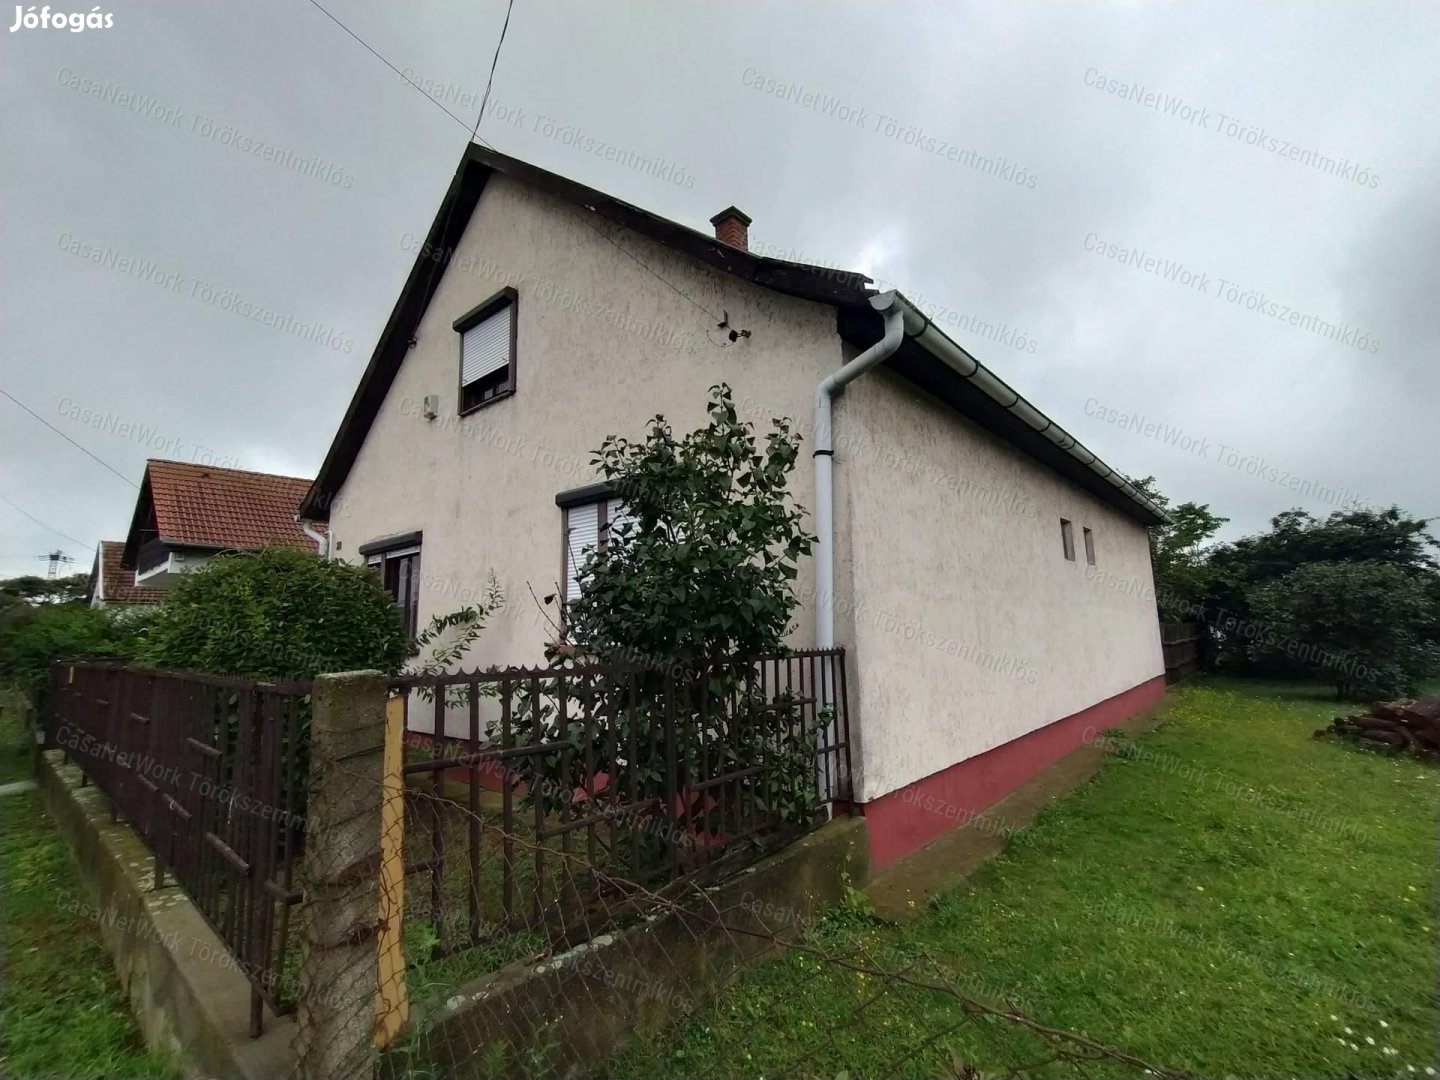 Eladó családi ház az Abádszalókhoz  közeli Pusztataskonyban!